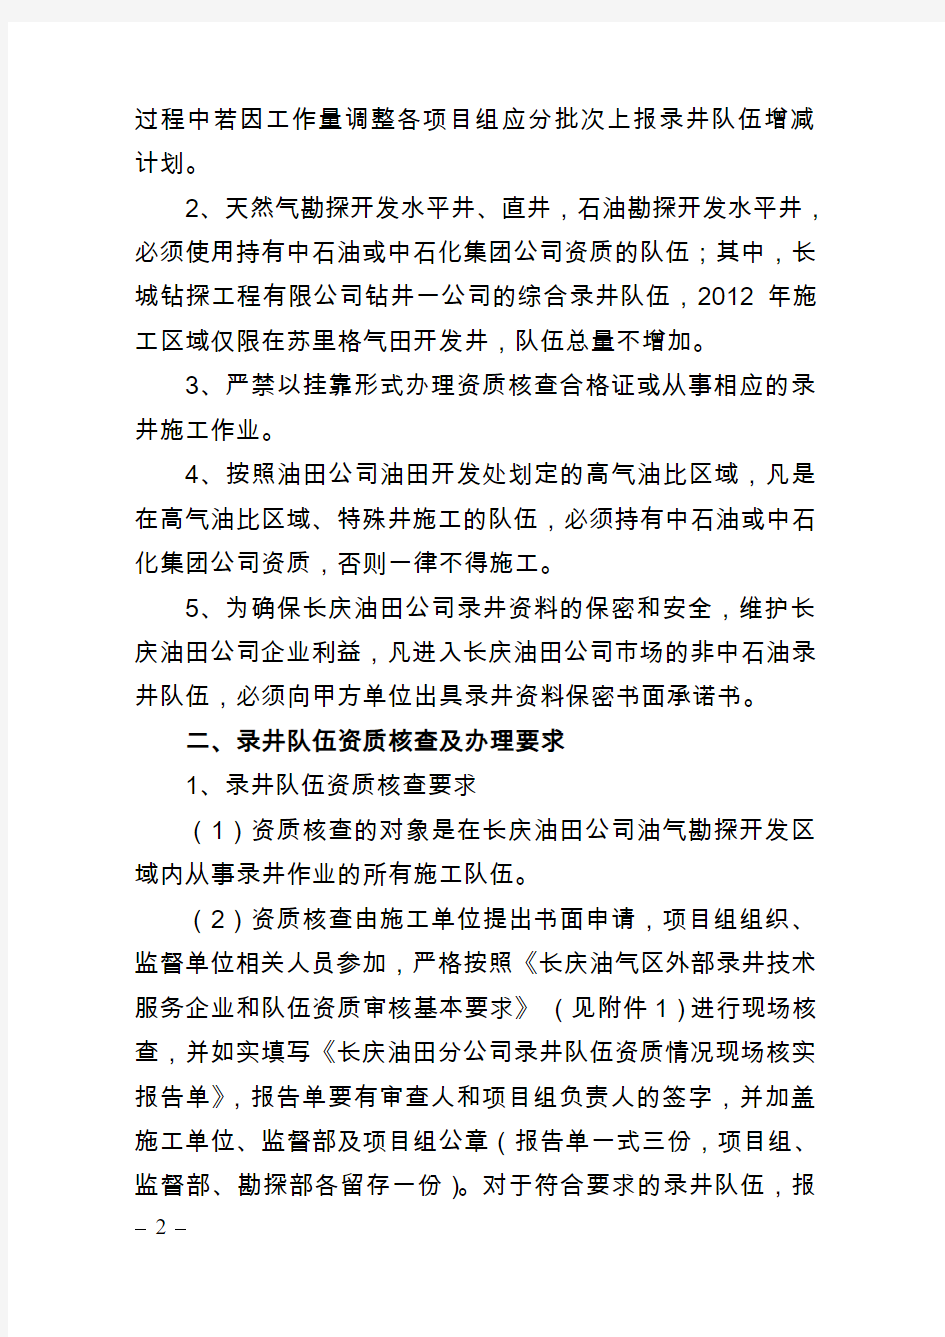 公务通知(第4号)关于长庆油田公司2012年录井队伍资质管理(审查)要求的通知